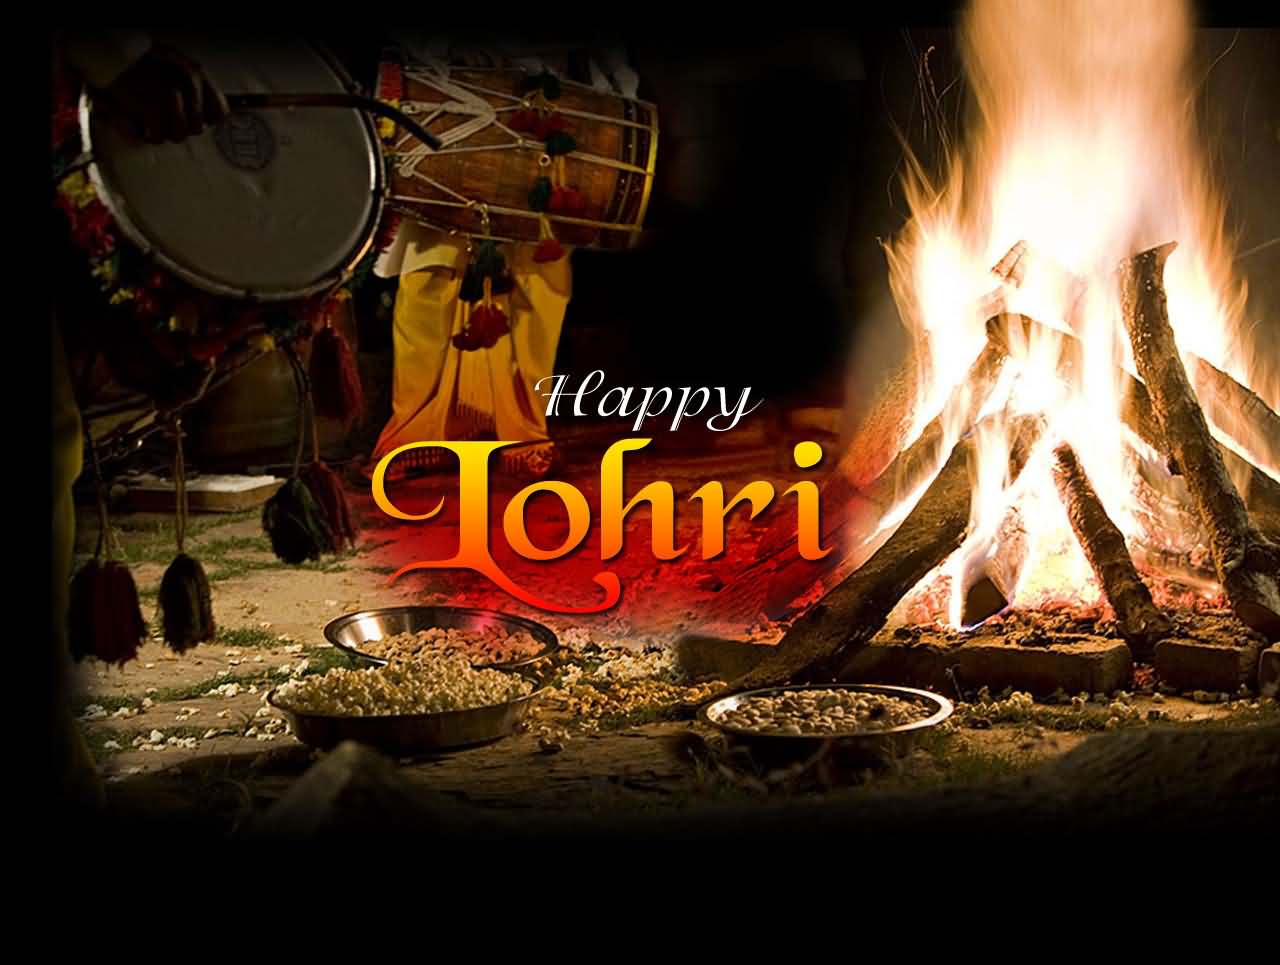 Happy Lohri 2018 Bonfire In Background